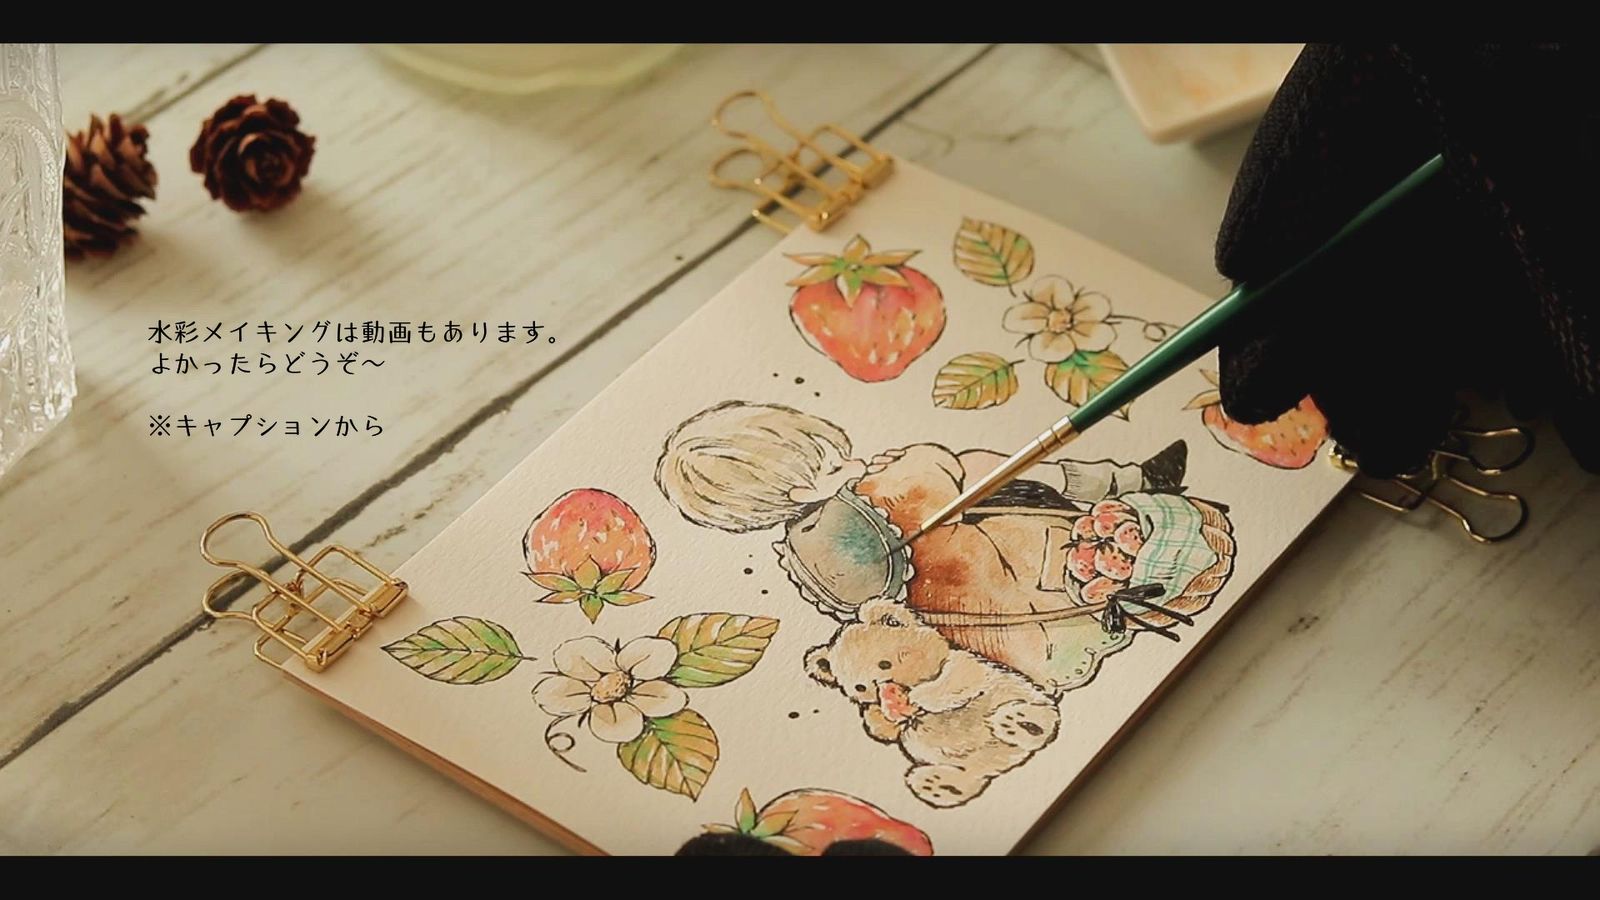 牛奶草莓水彩妆（赠品）插画图片壁纸